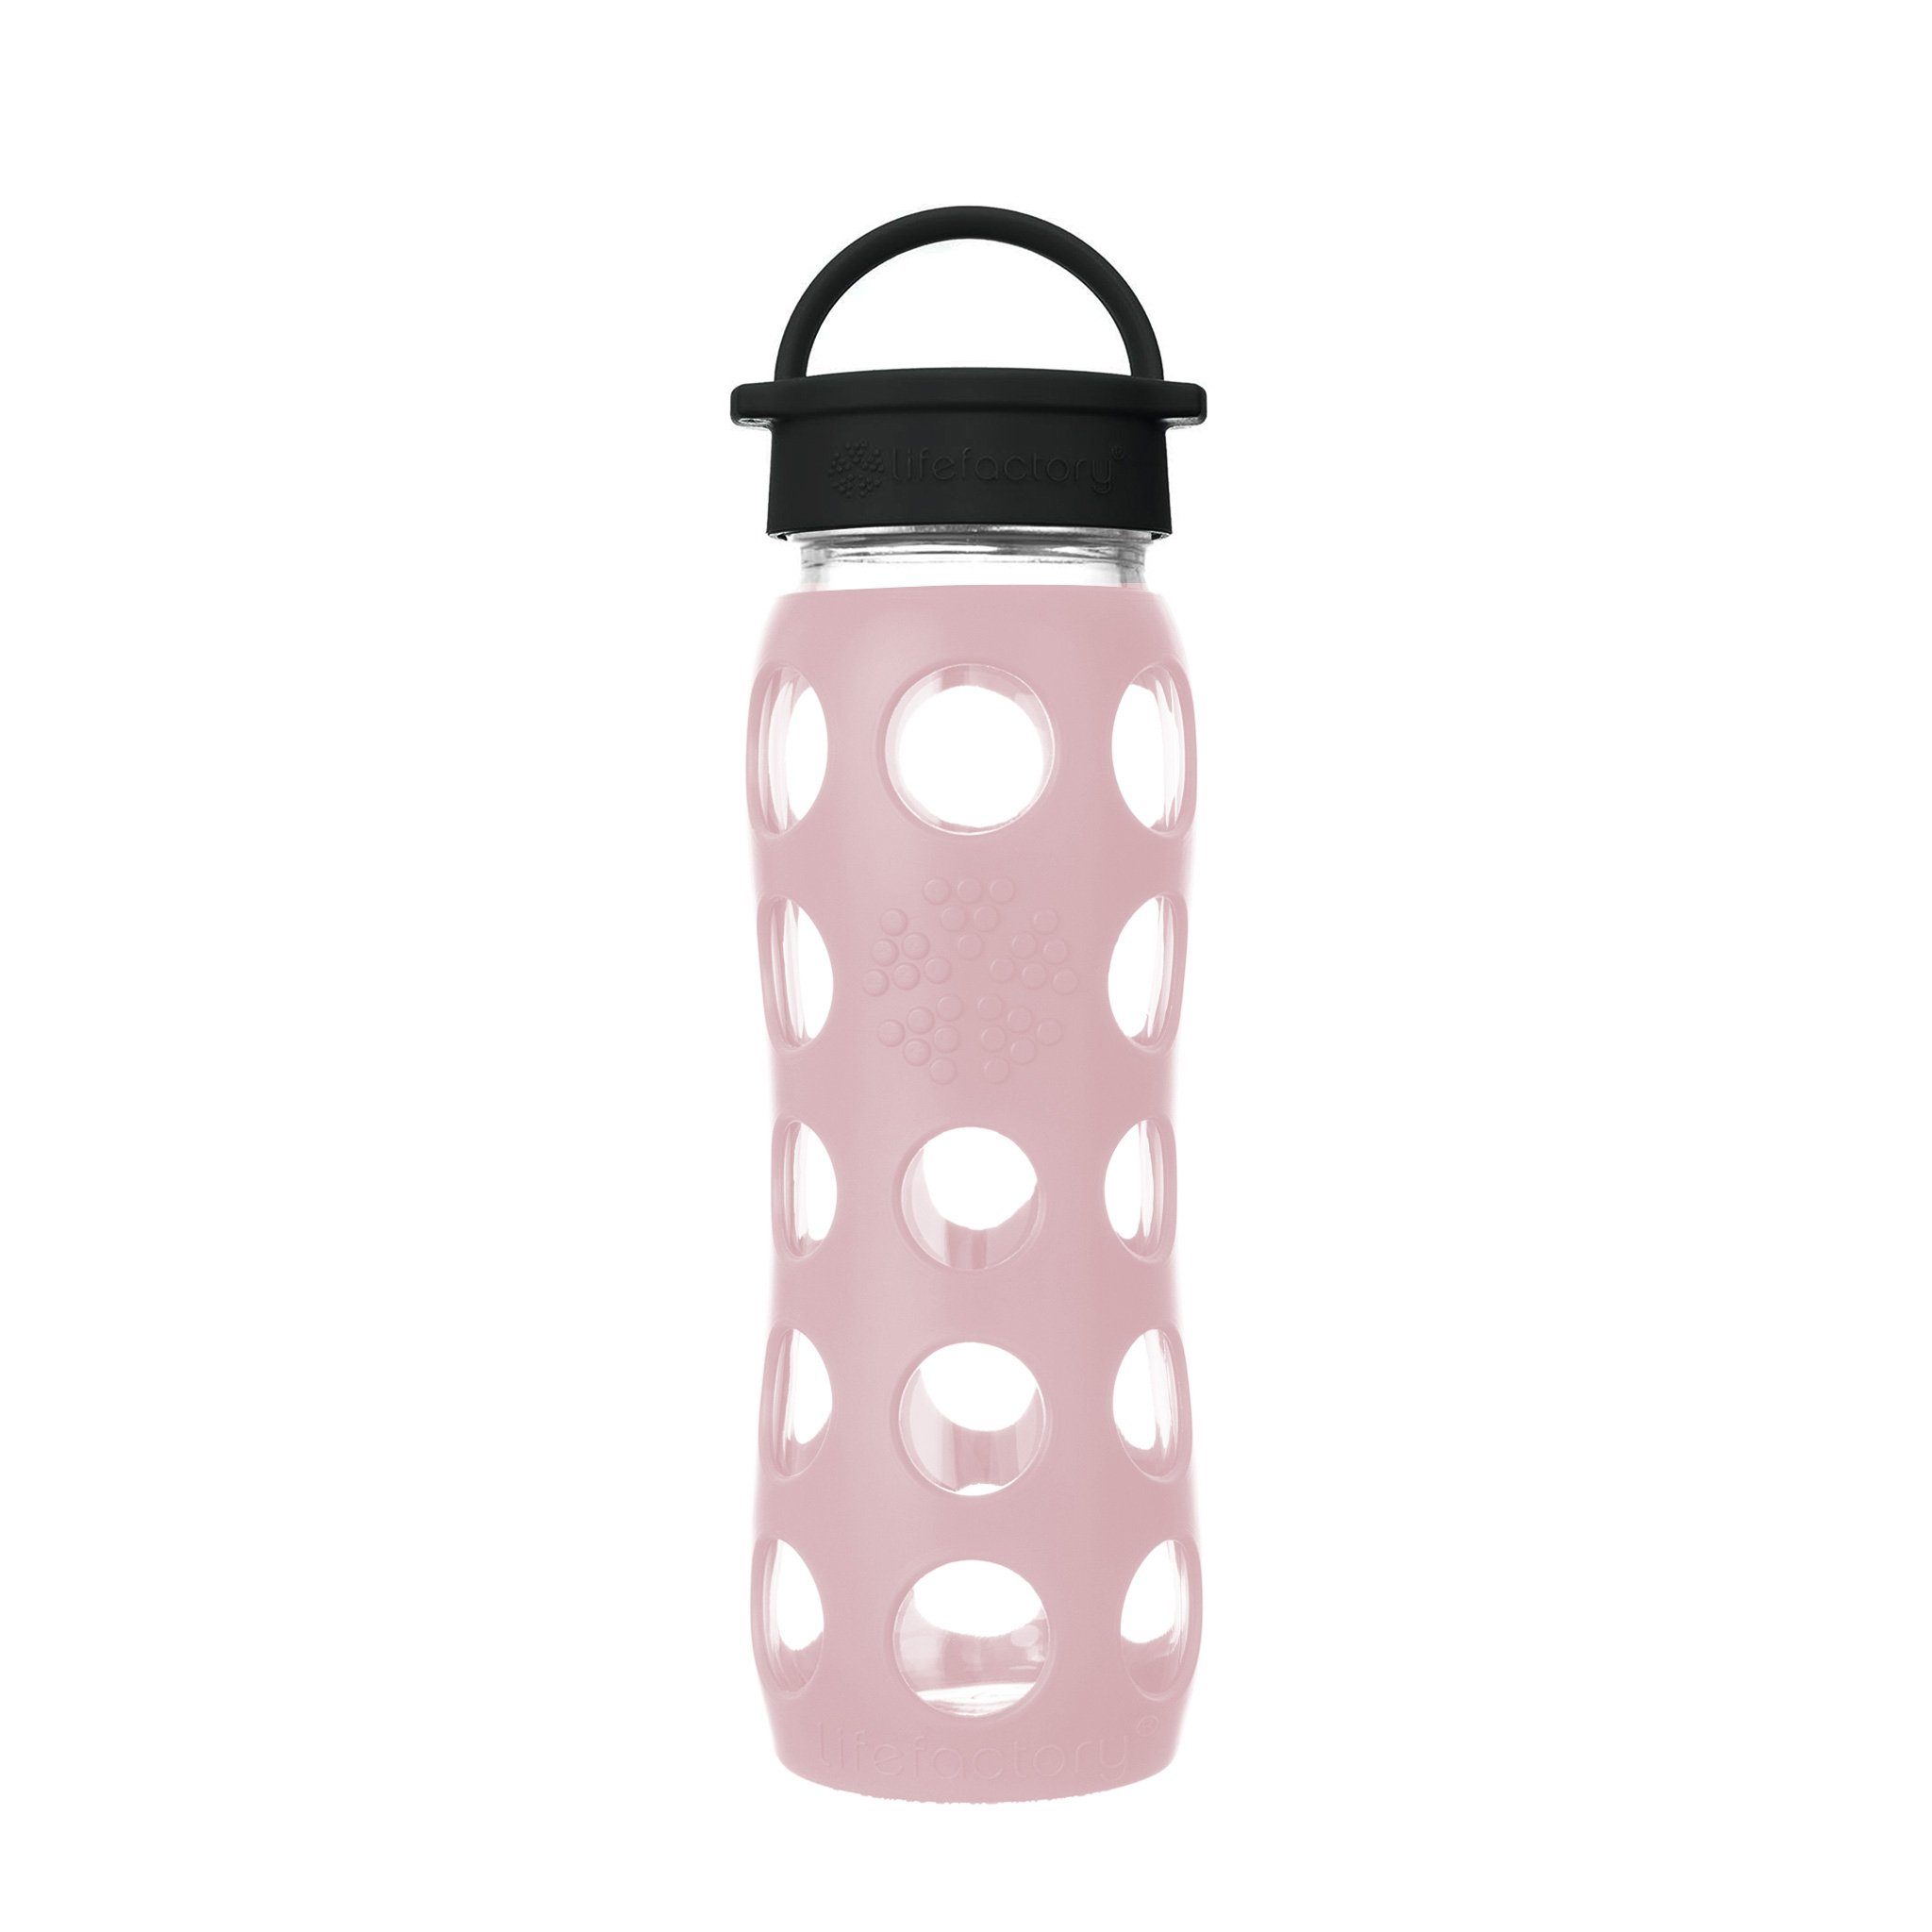 Lifefactory Babyflasche, Lifefactory Glas Flasche mit Silikonhülle und Schraubverschluss, 650ml Desert Rose